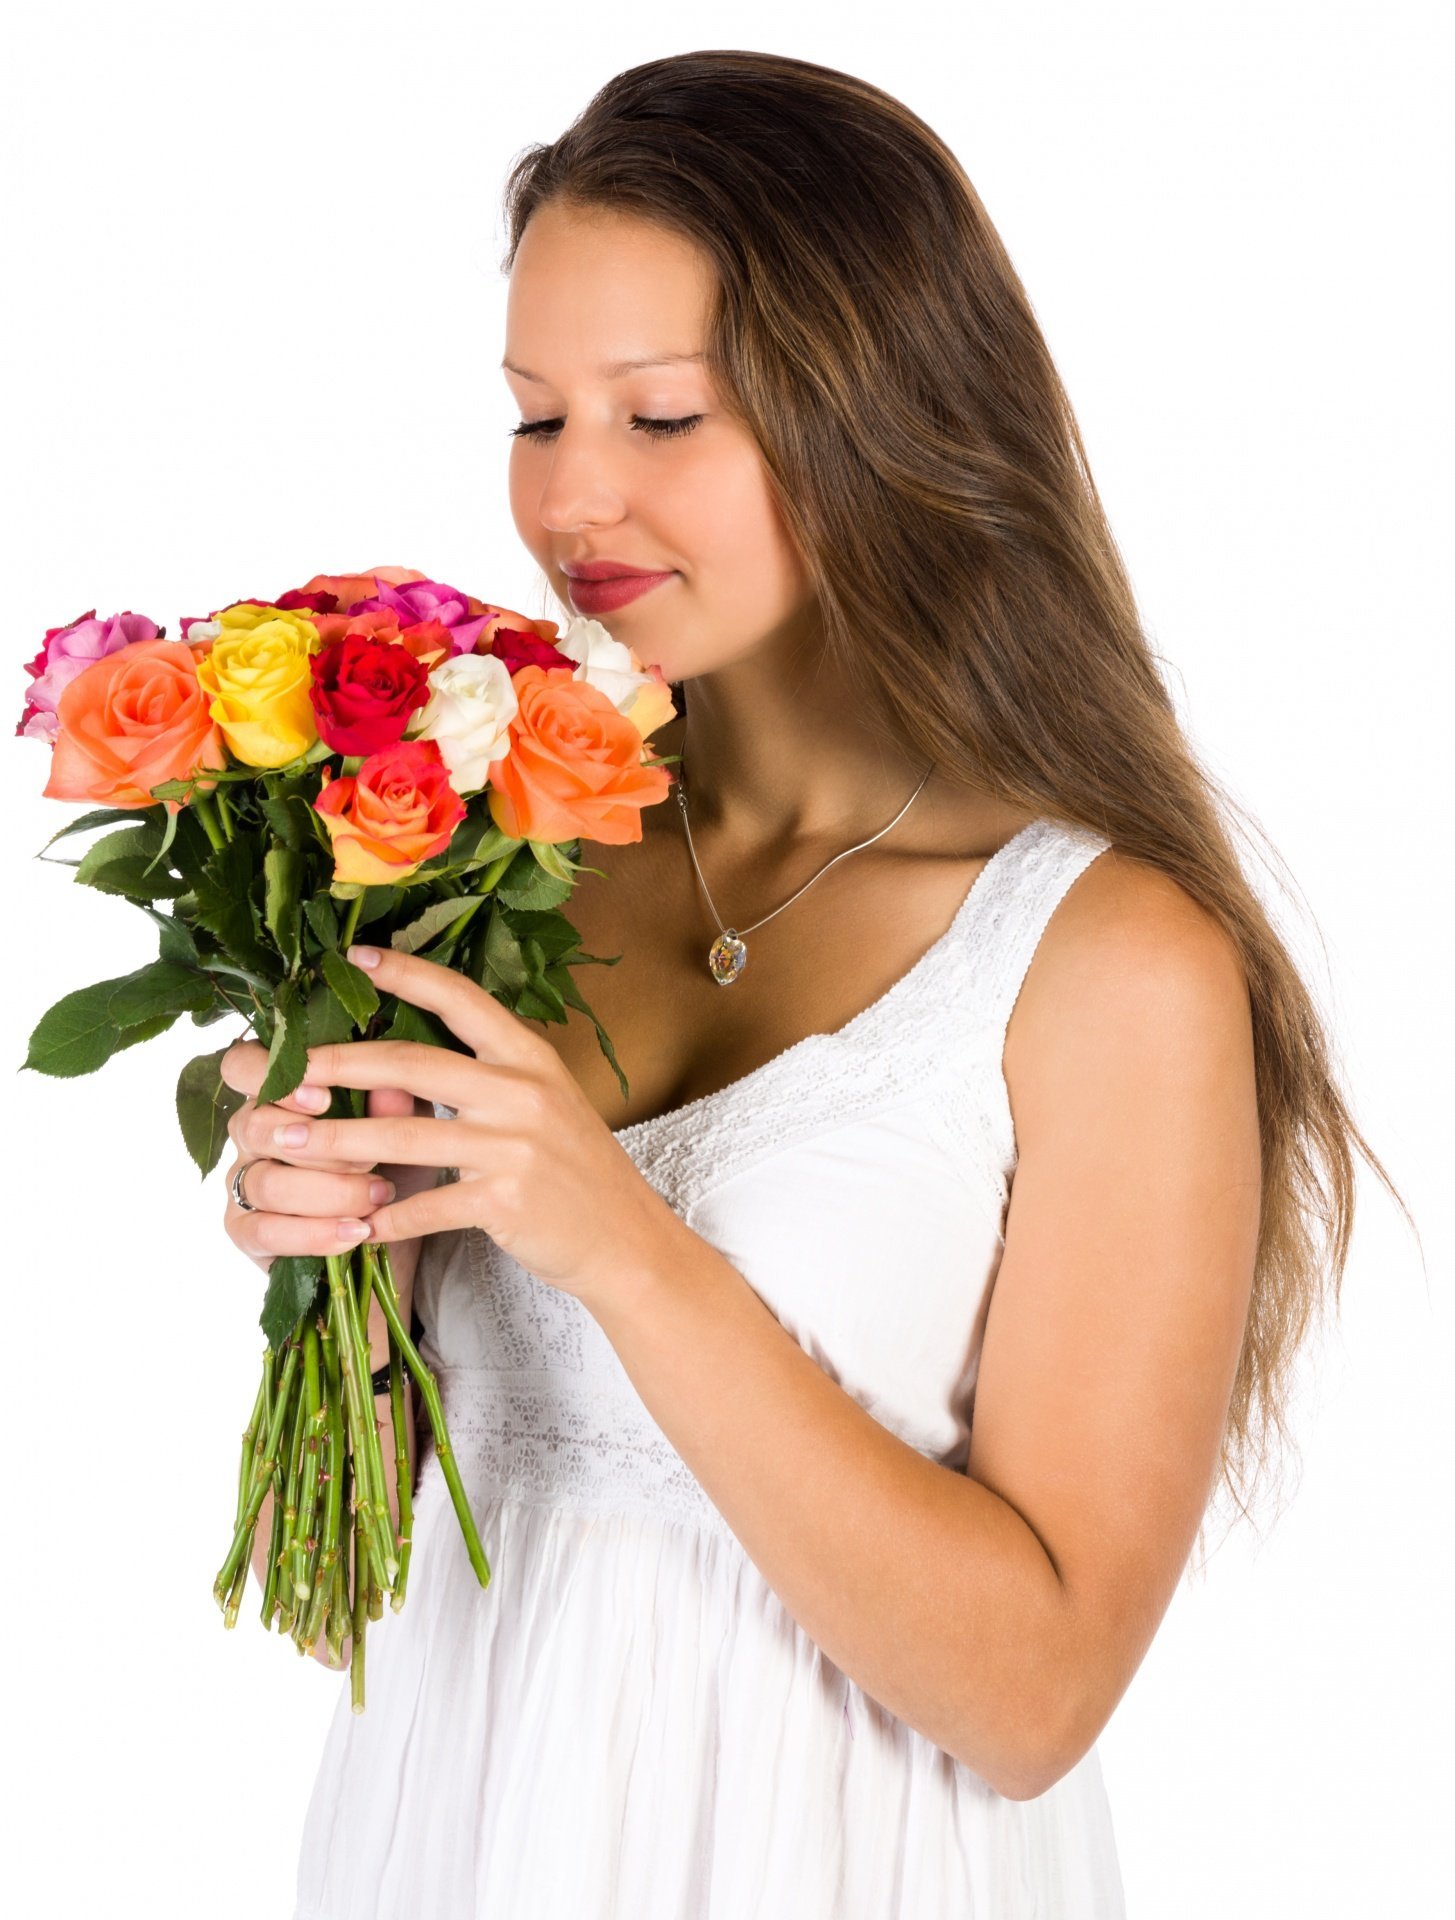 Какие розы дарят девушкам. Букет "девушке". Букет цветов для женщины. Девушка с цветами. Букет в руках у женщины.